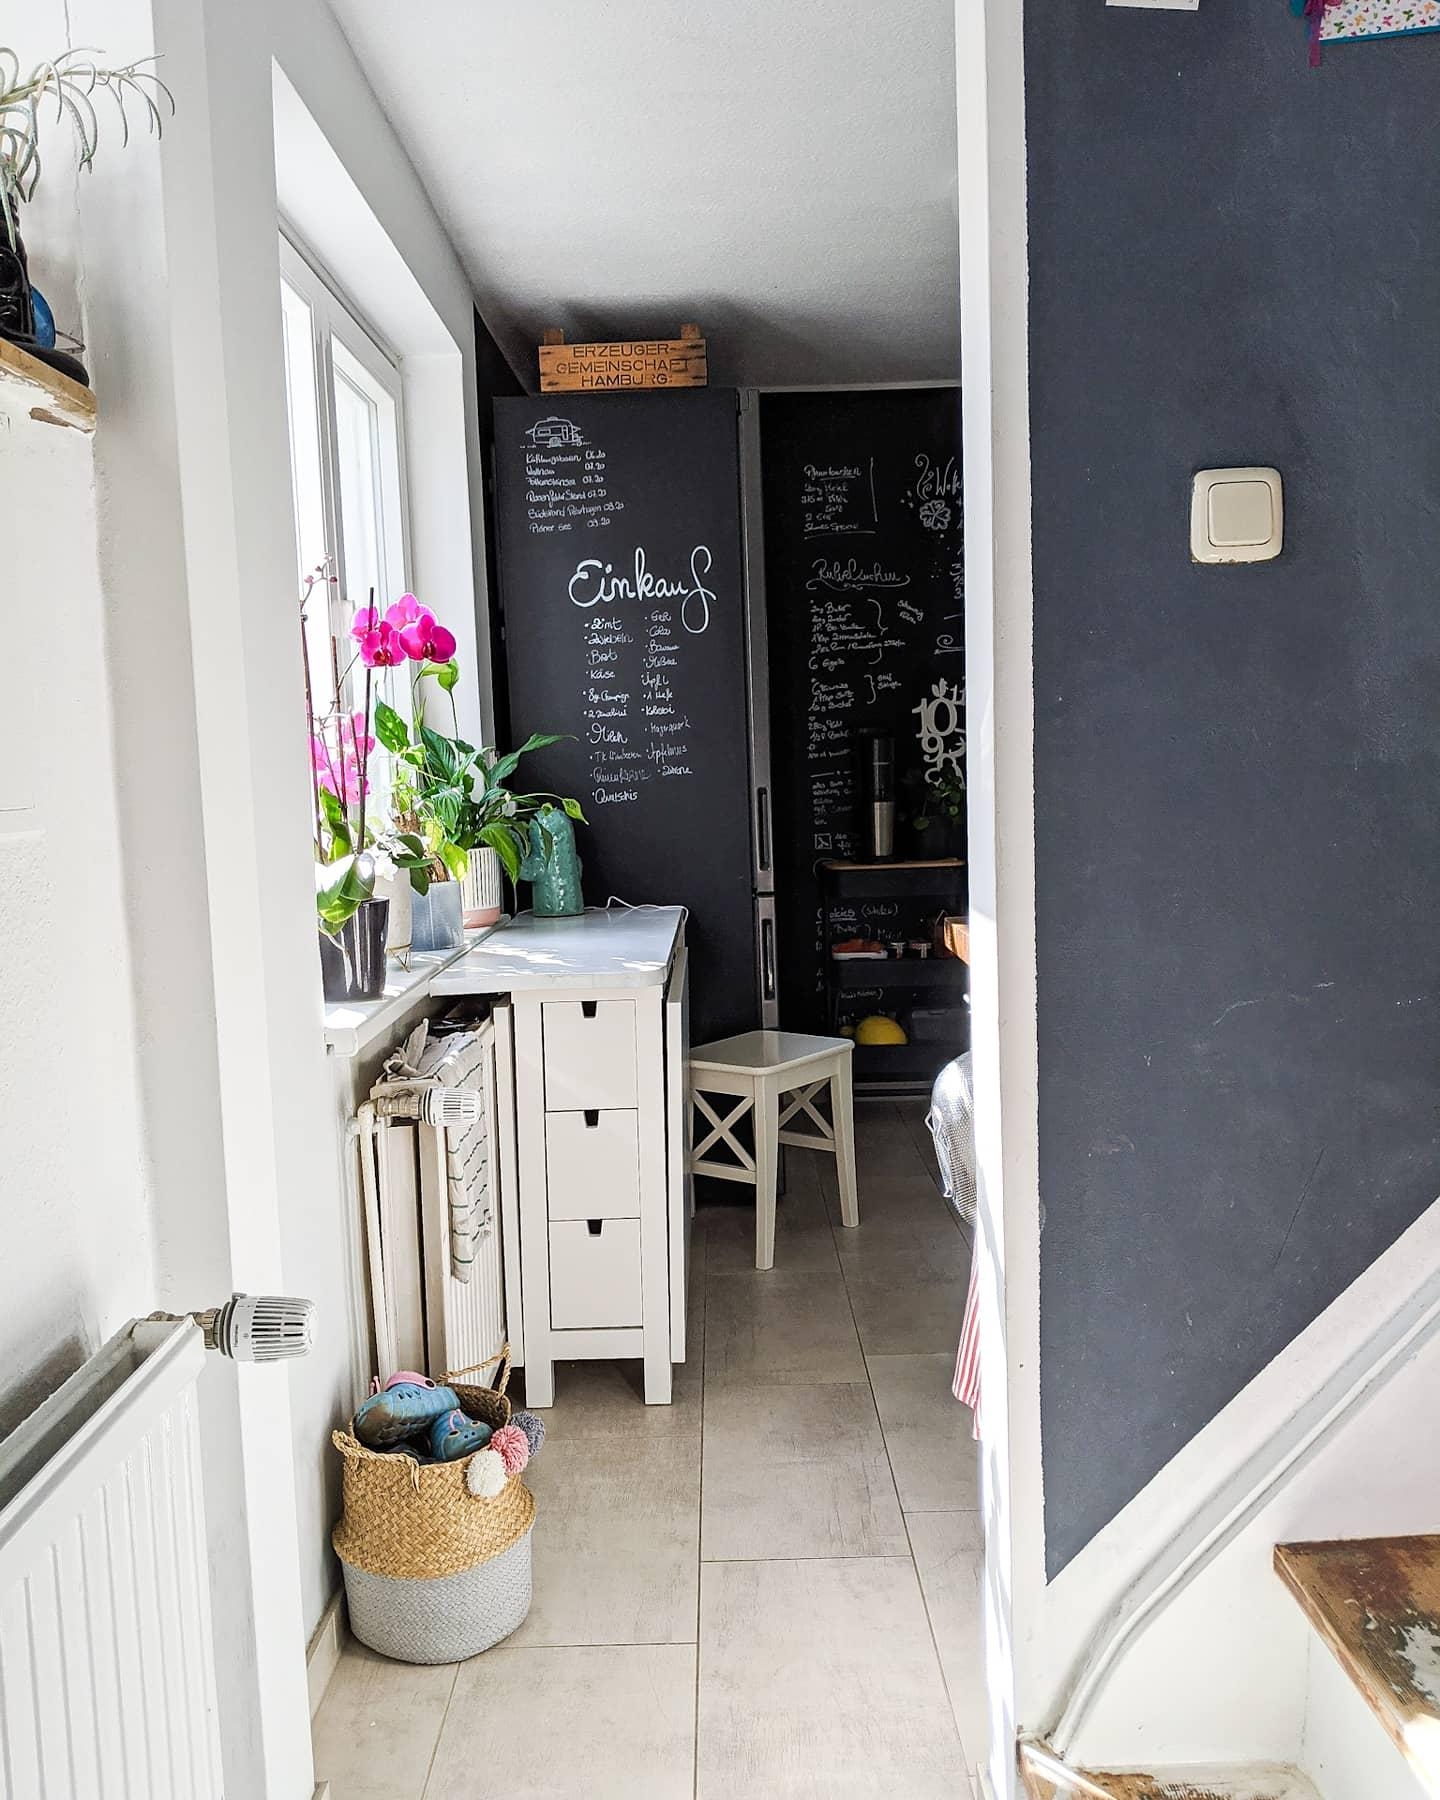 Vom Flur in die Küche
#schwarzeküche #schwarz #weiss #treppe #küche #renovieren #magnetwand #licht 